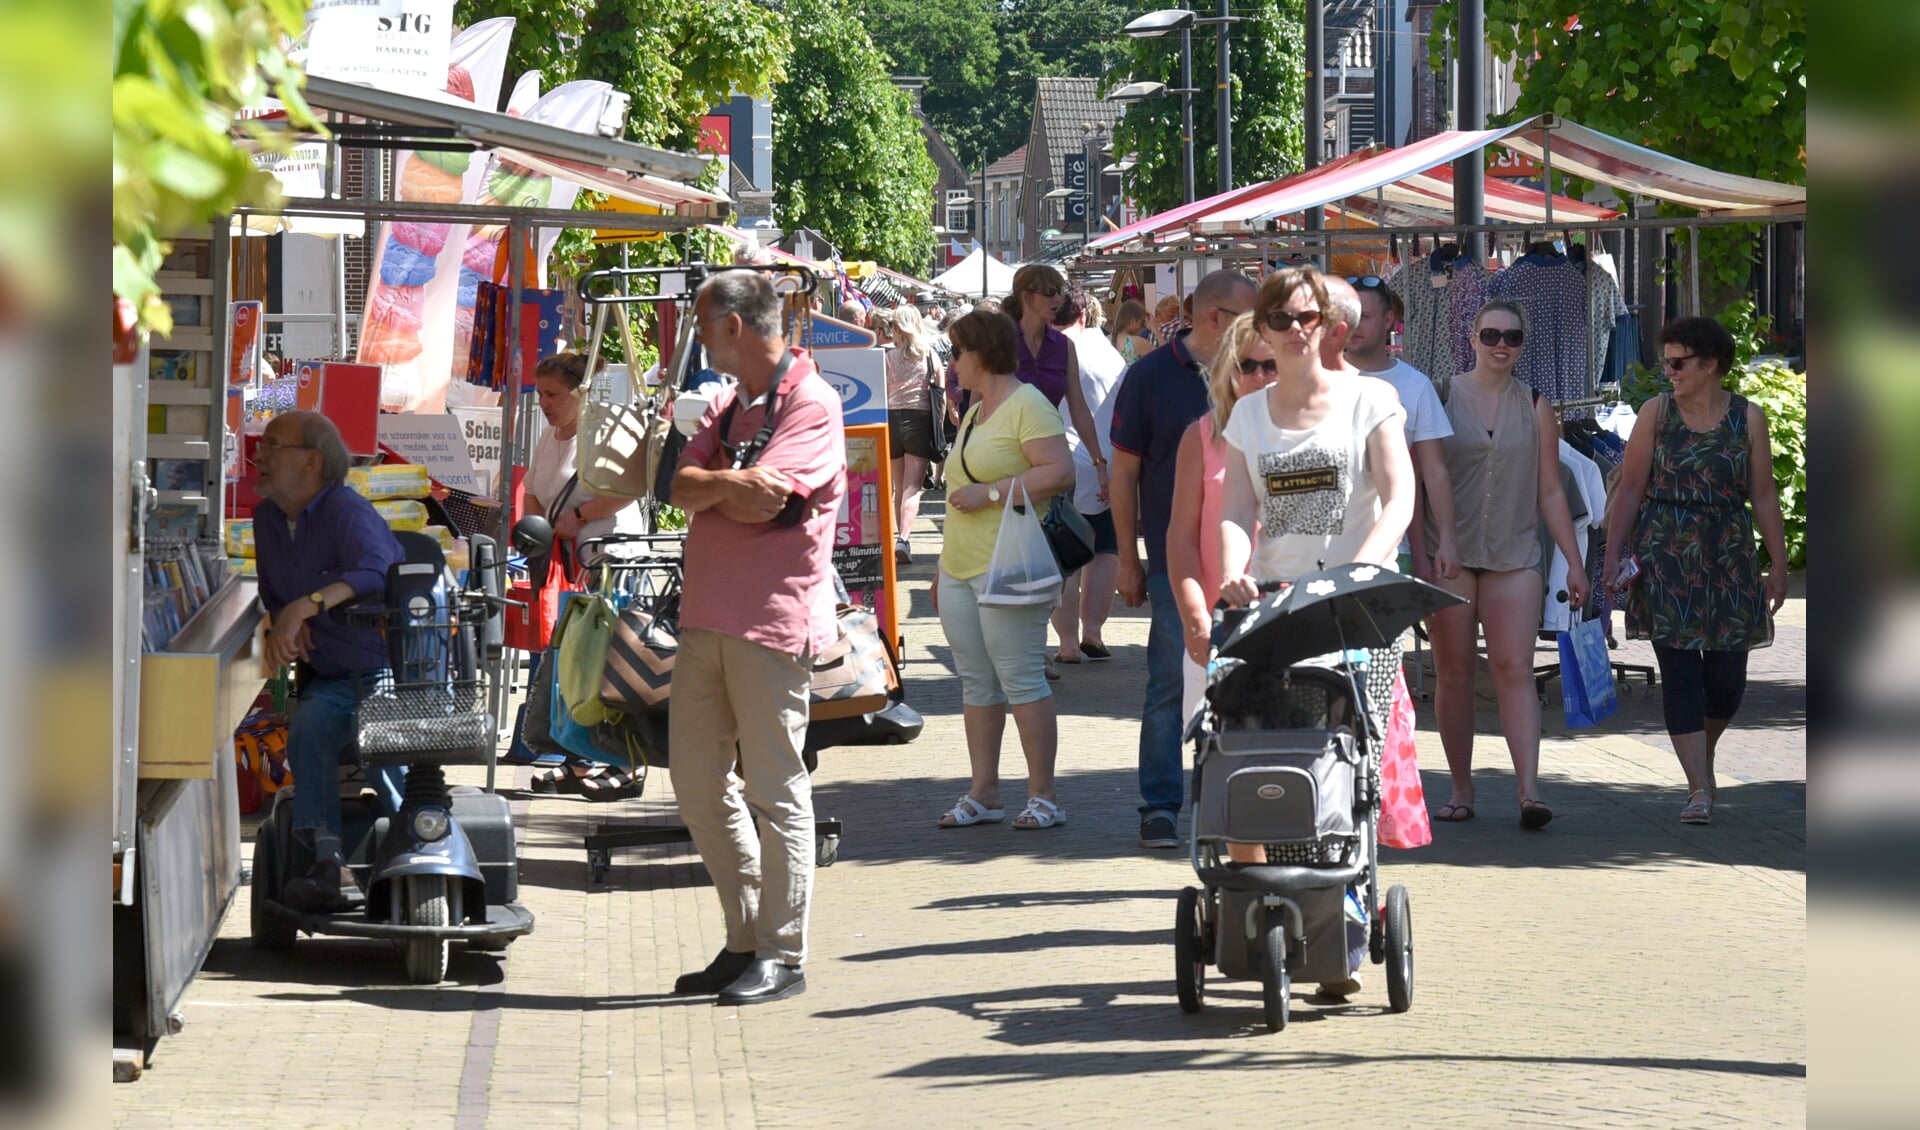 De enquêteurs stelden onder andere vragen aan bezoekers van de Markt in Burgum.